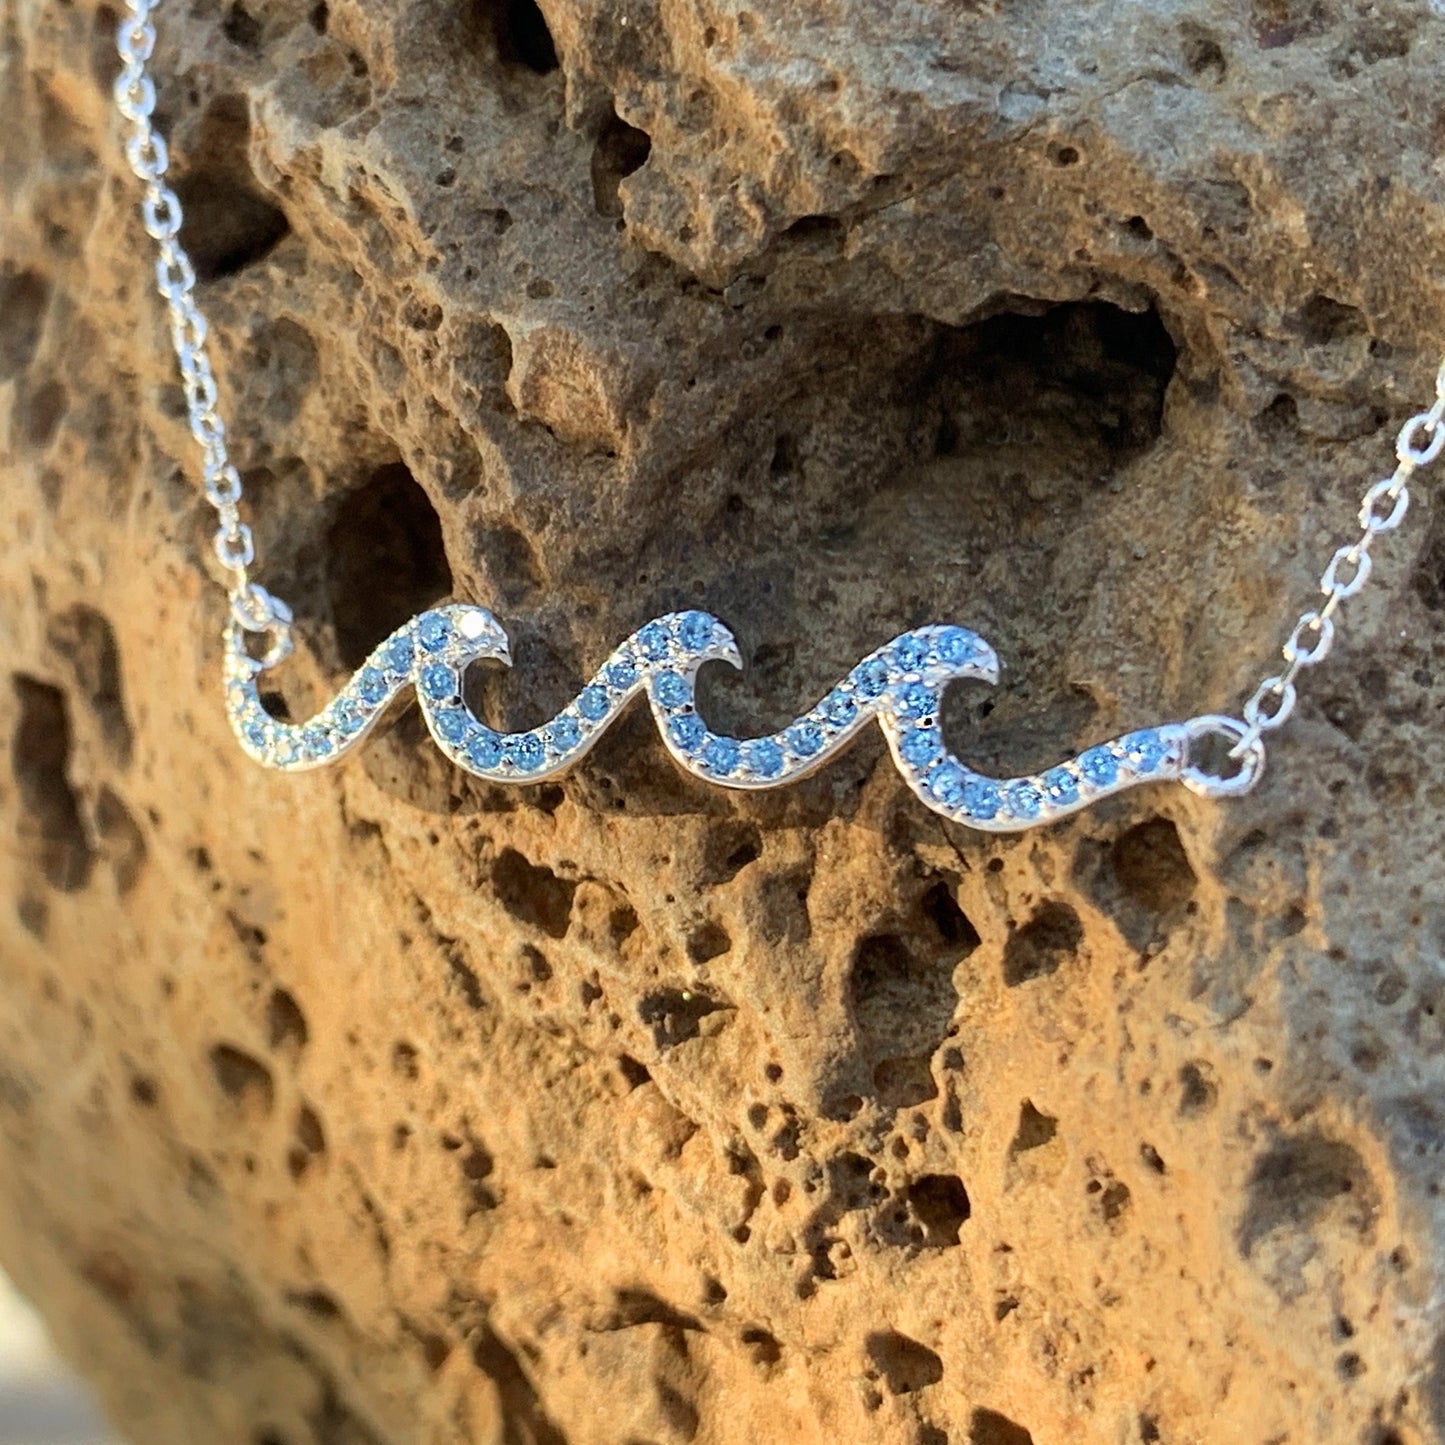 Crystal wave pendant in ocean blue.